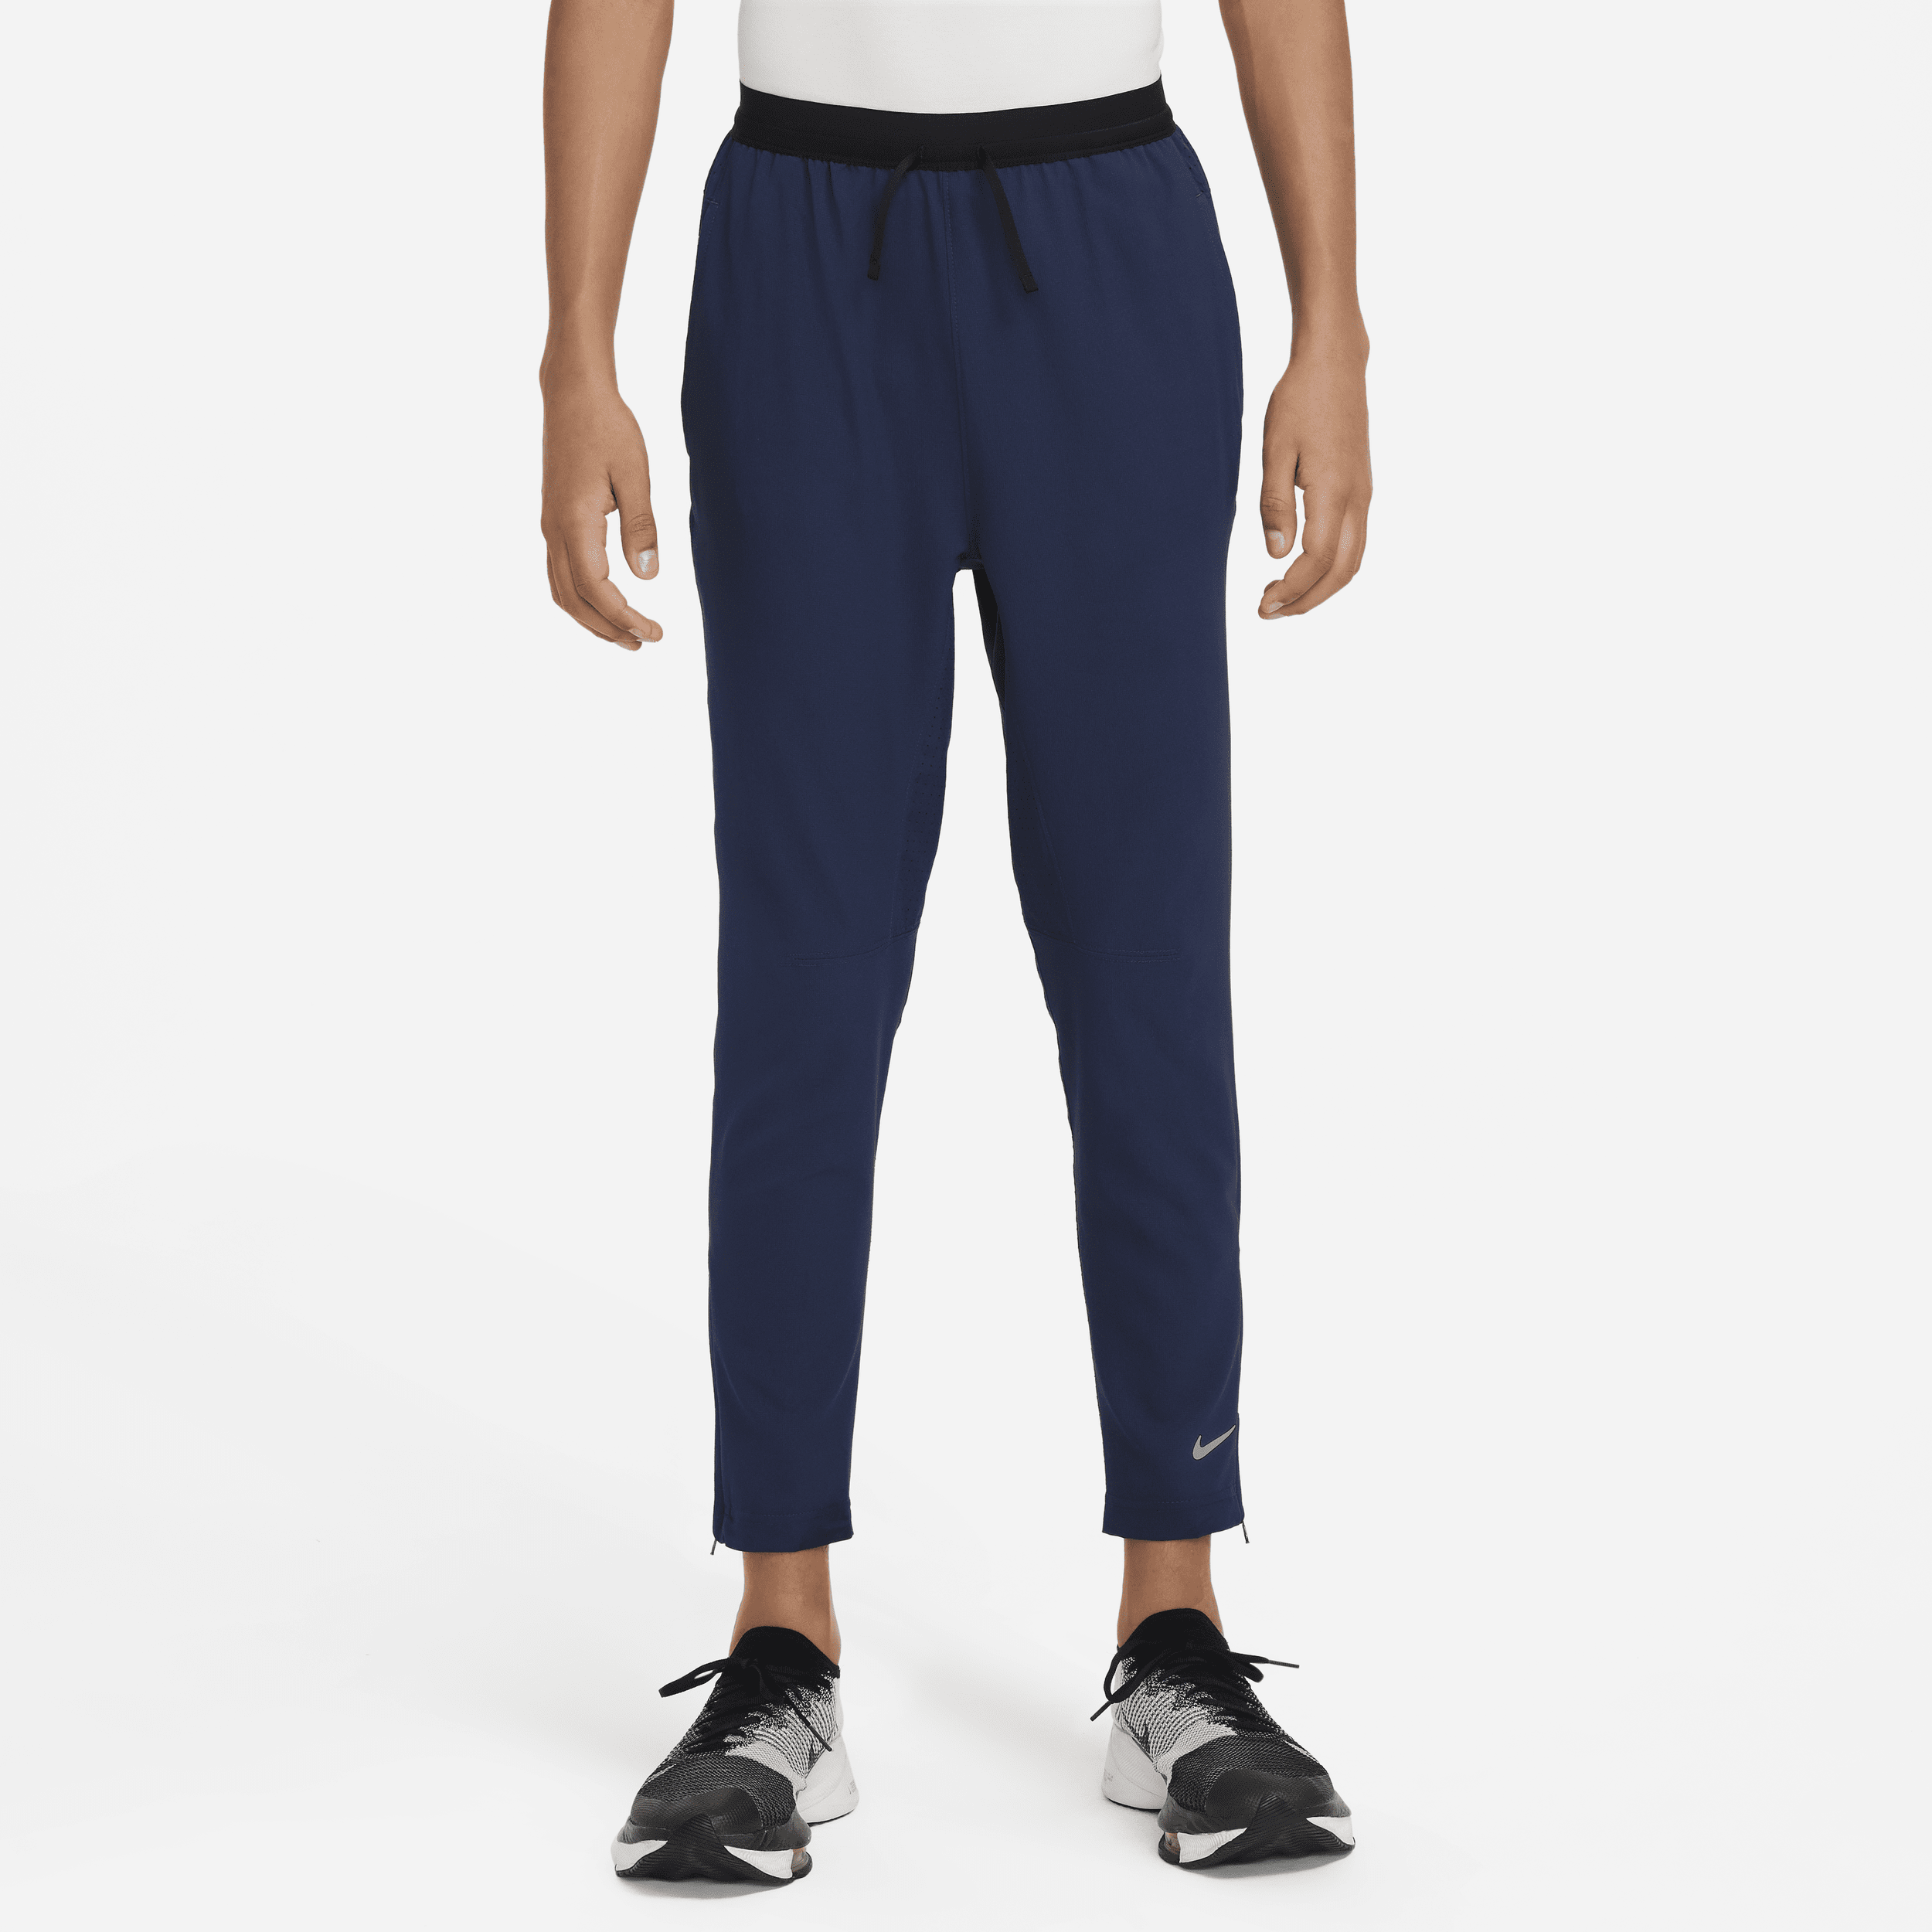 Pantaloni da training Dri-FIT Nike Multi Tech EasyOn – Ragazzo - Blu